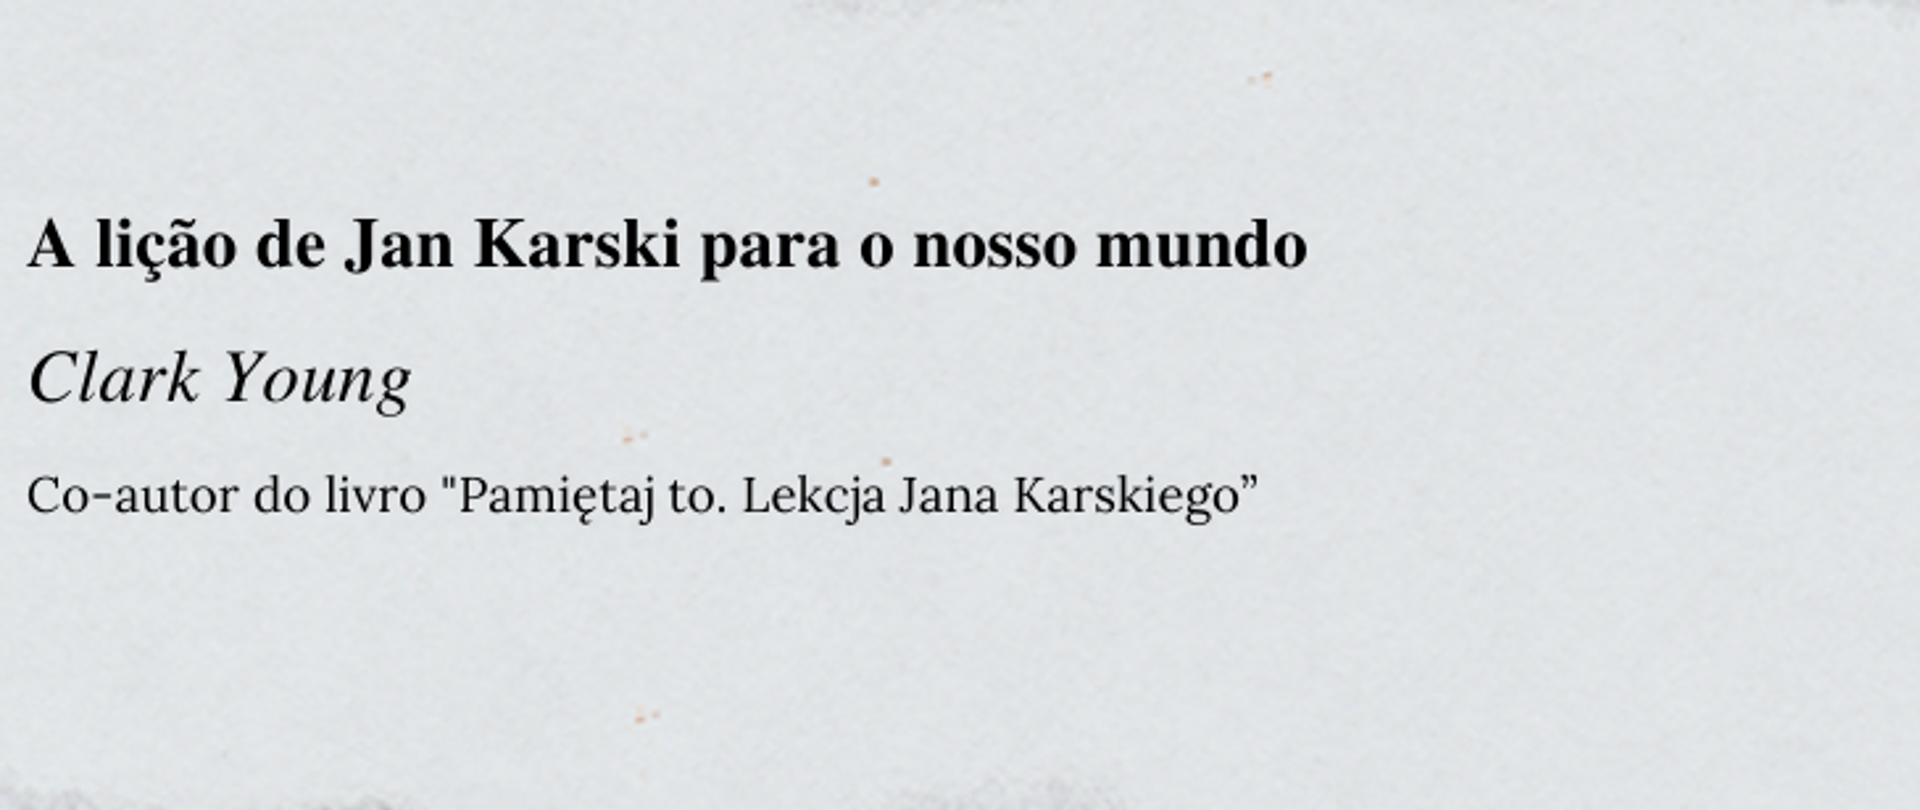 A lição de Jan Karski para o nosso mundo